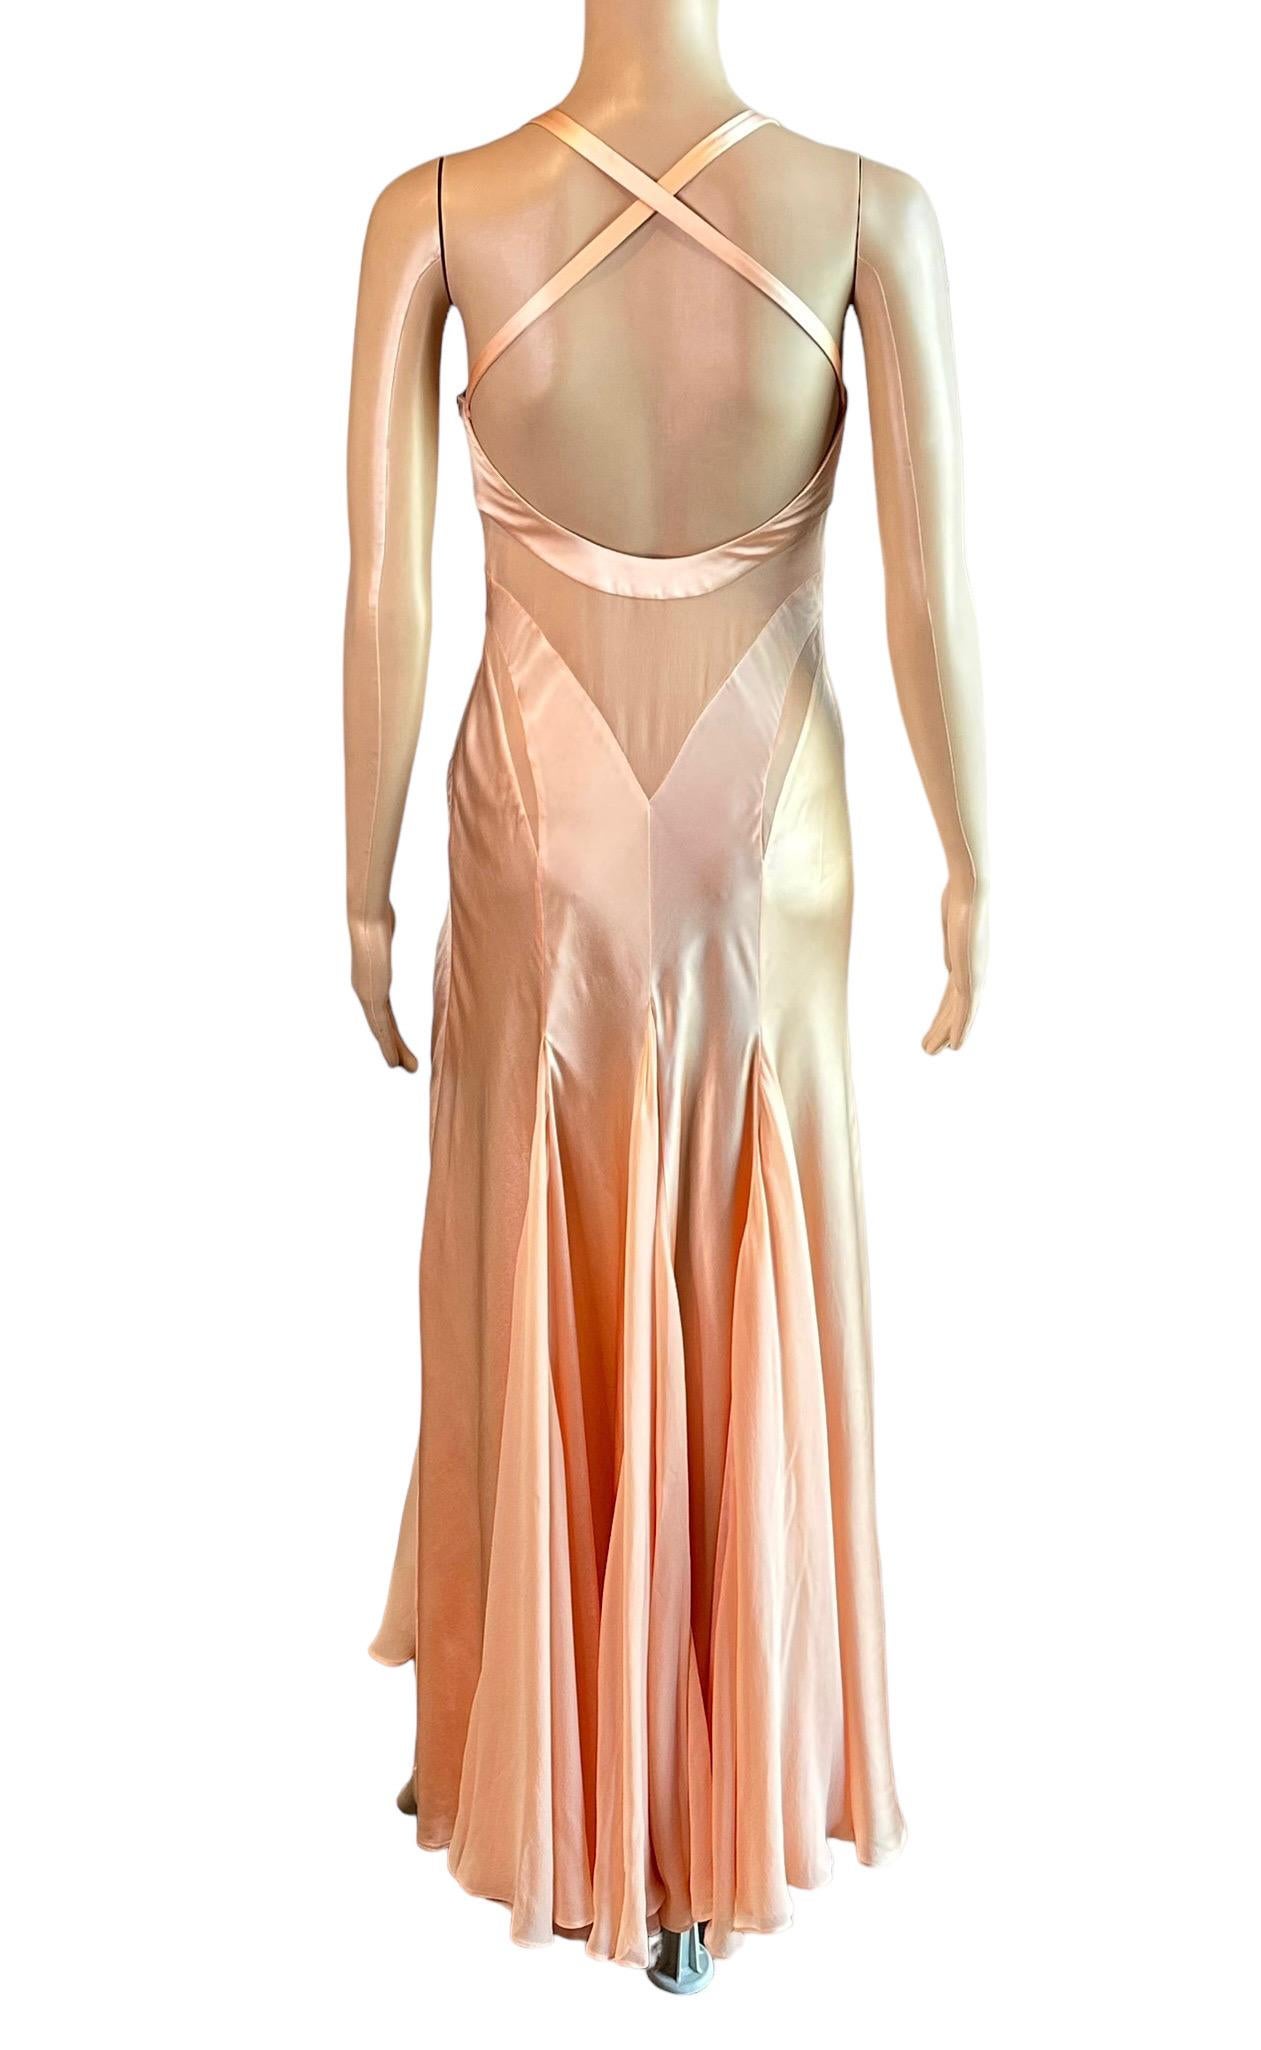 Versace S/S 2005 Laufsteg Durchsichtige Paneele Medusa Logo Seide Slip Abendkleid Kleid  6